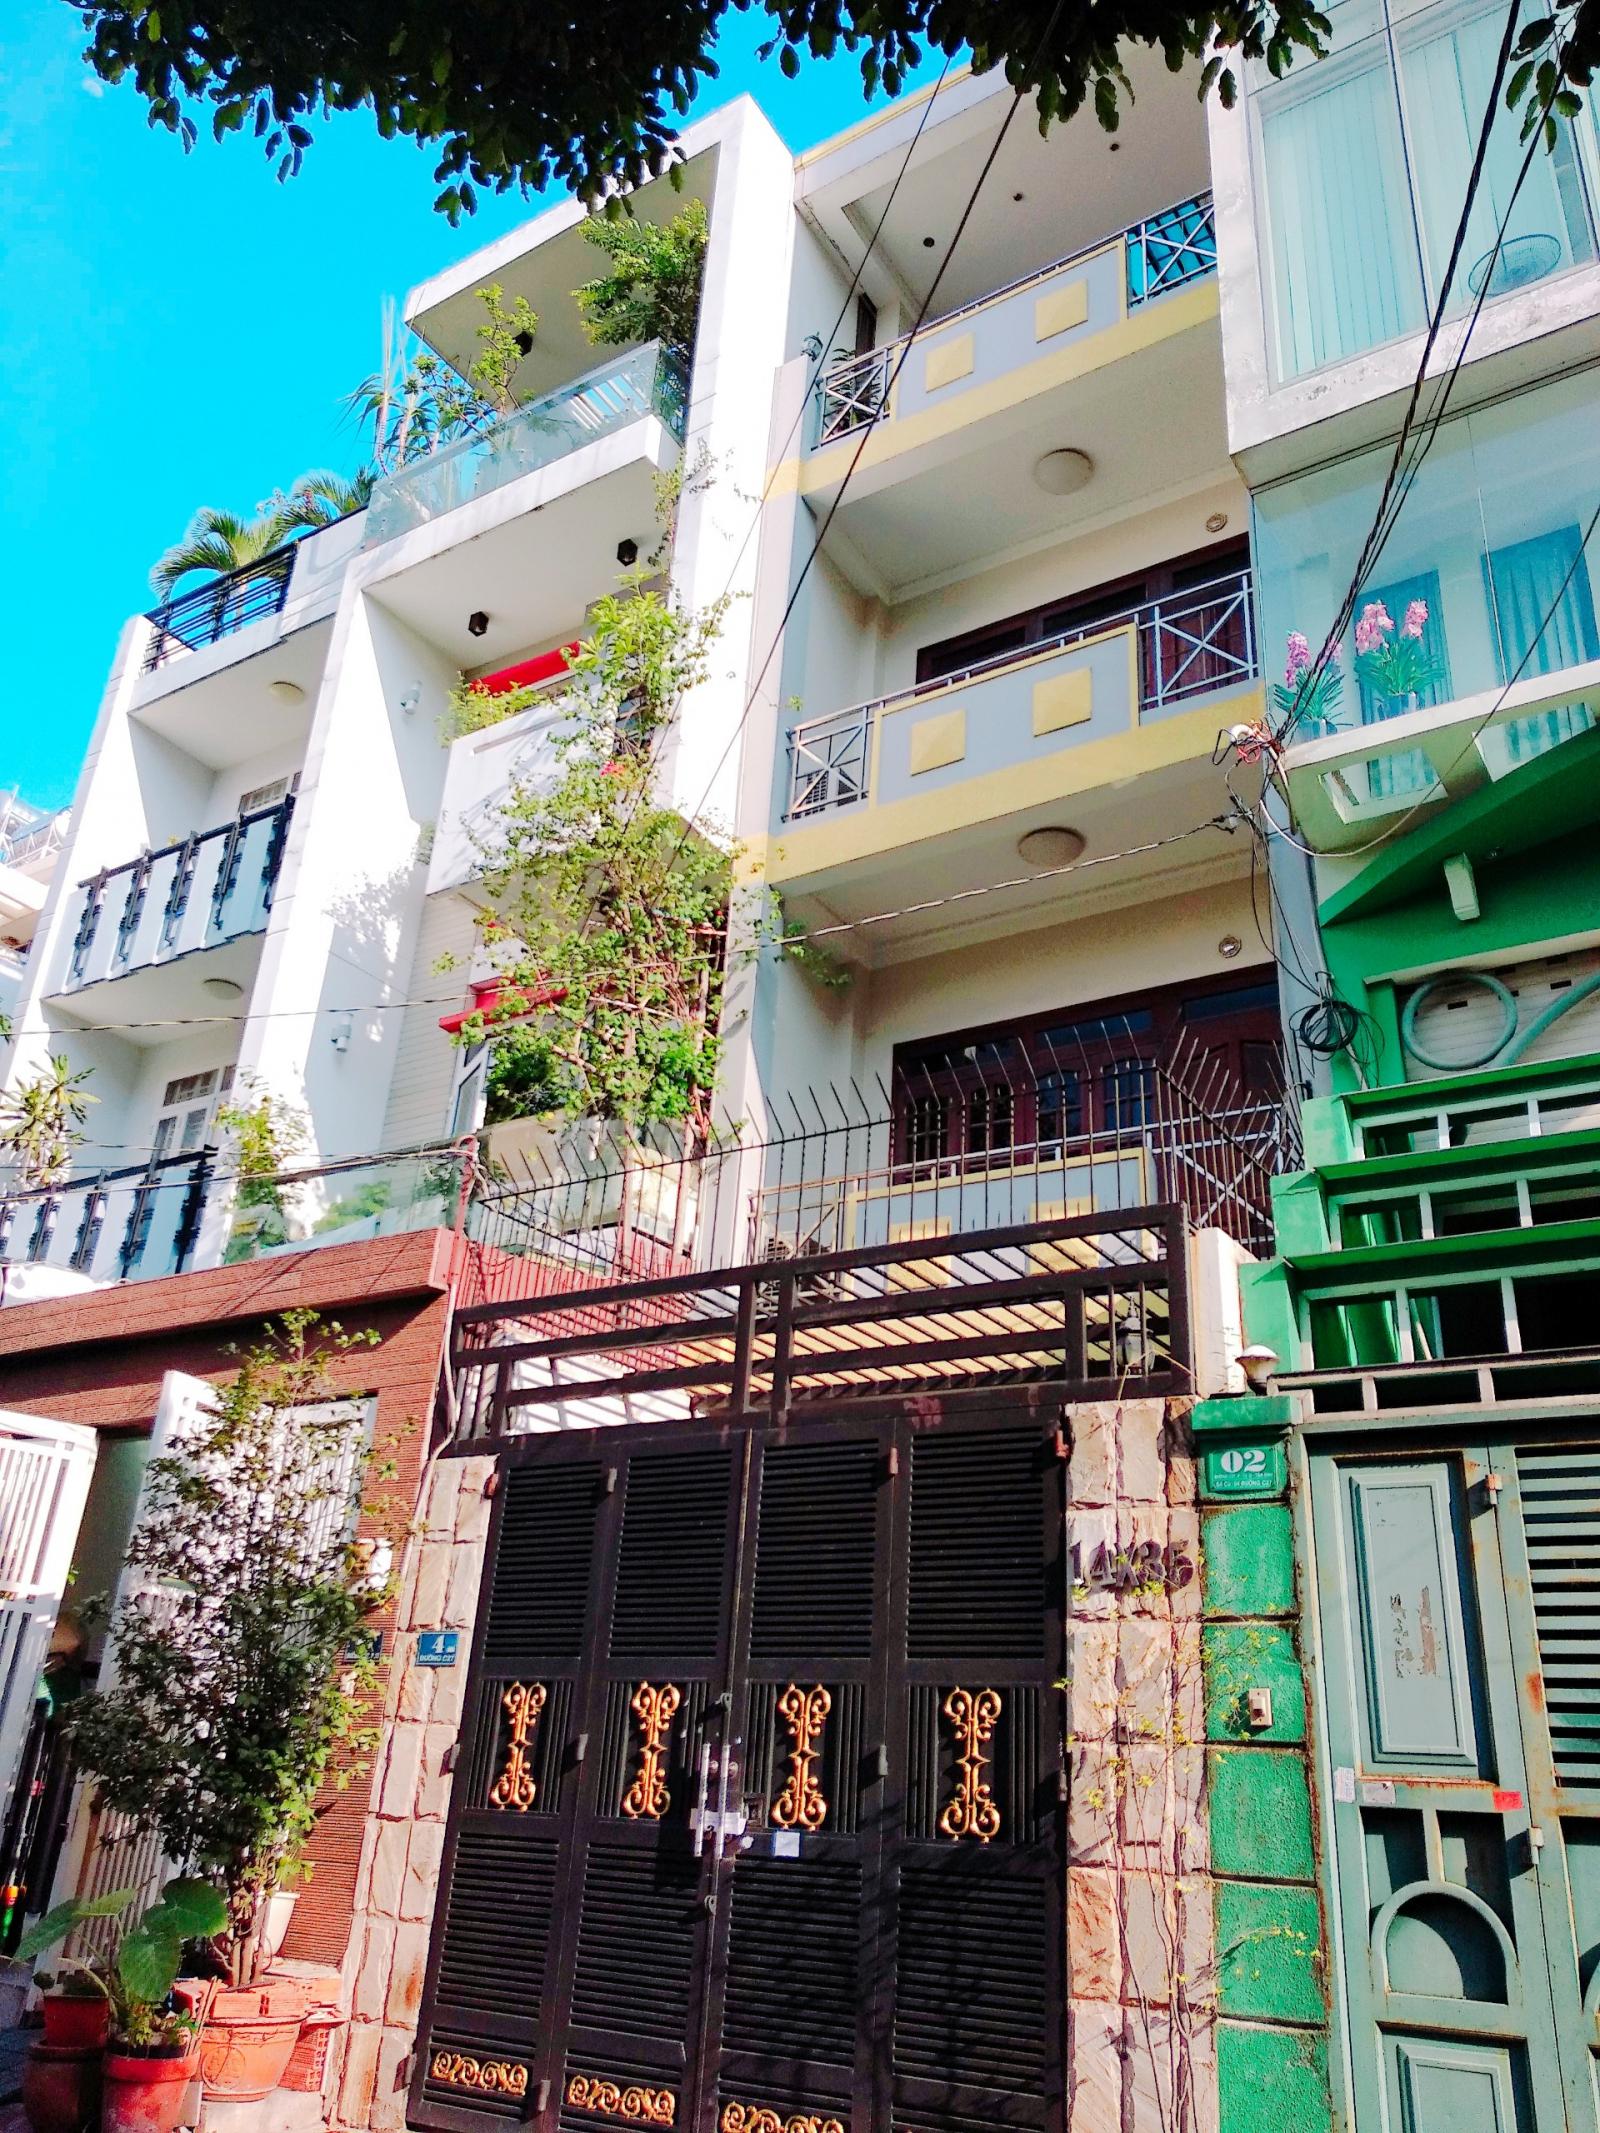 Định cư bán gấp nhà riêng đường Nguyễn Thái Bình, 2 Xe tải né nhau trước nhà